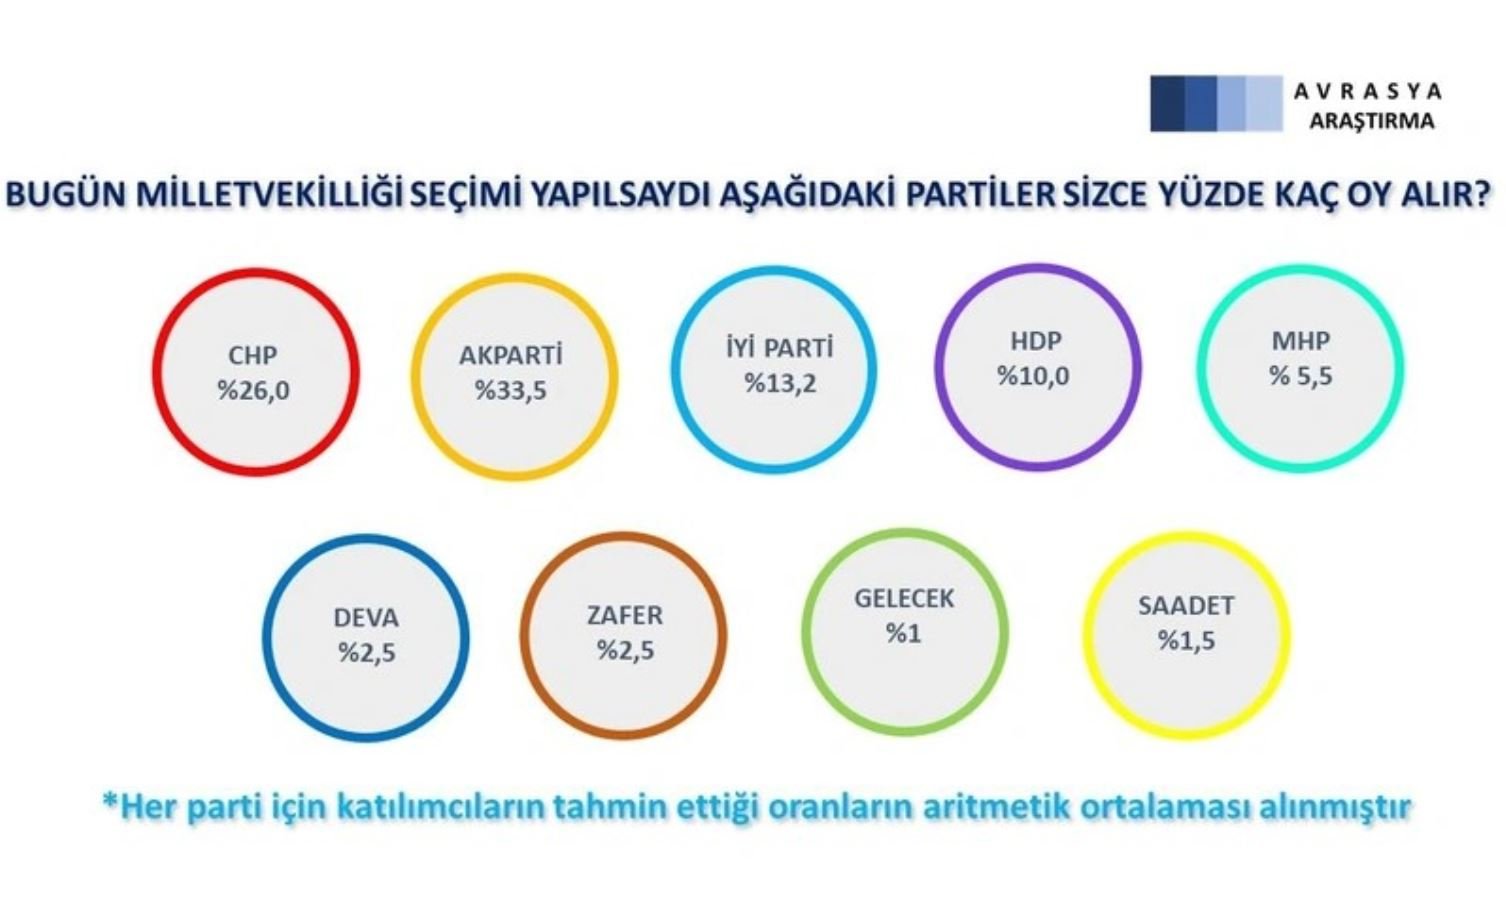 <p><strong>'Bugün milletvekilliği seçimi yapılsaydı aşağıdaki aşağıdaki partiler sizce yüzde kaç oy alır?'</strong> sorusunda ise dikkat çeken sonuçlar çıktı. </p>
<p>Sonuçlara göre, ankete katılanlar  AKP'nin olduğundan daha yüksek oy alacağını düşünüyor.</p>